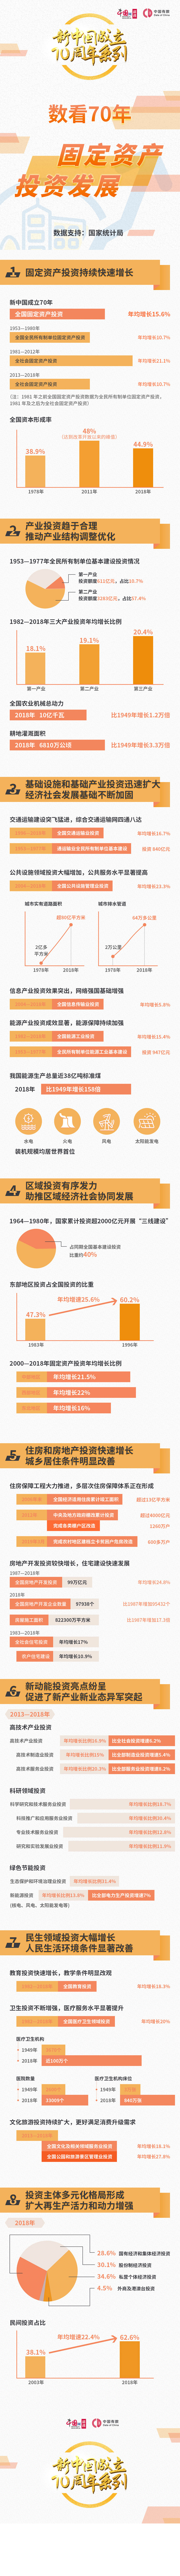 数看70年固定资产投资发展-中国网地产